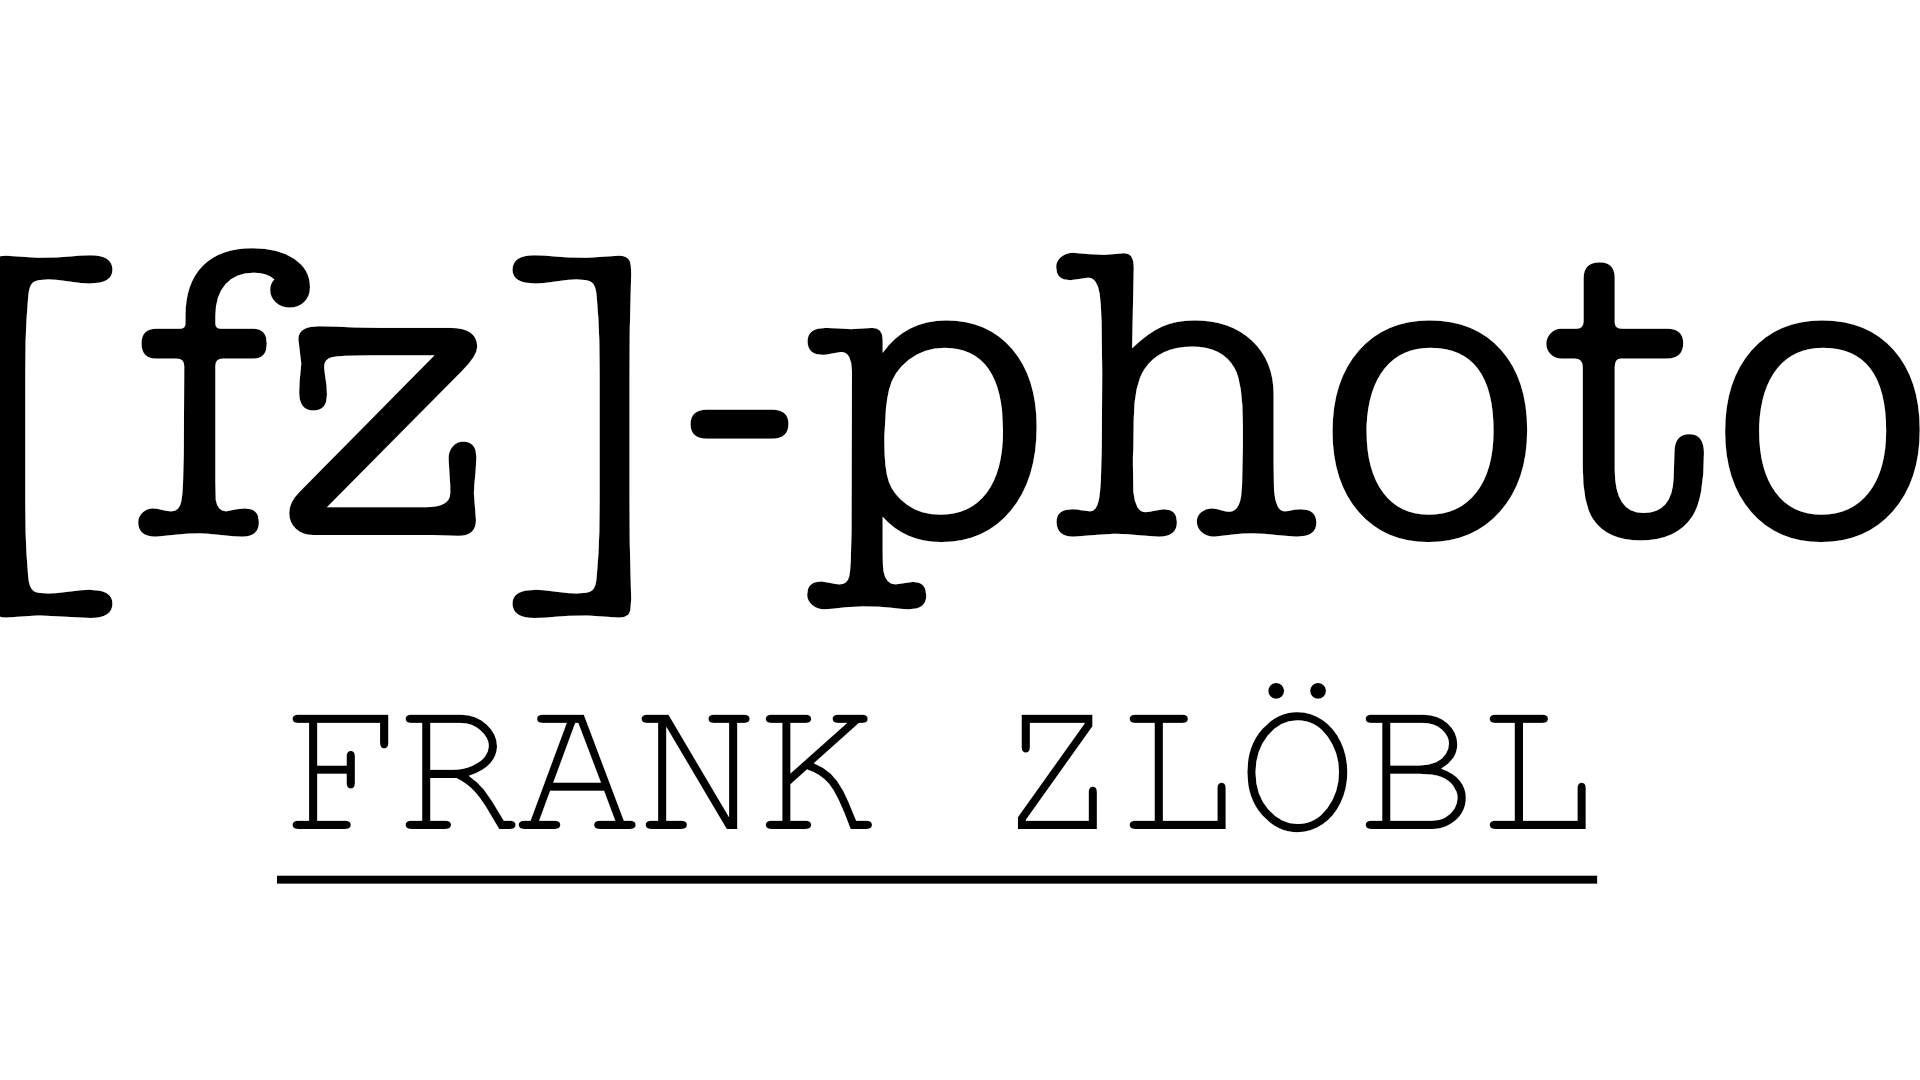 Logo_weiß